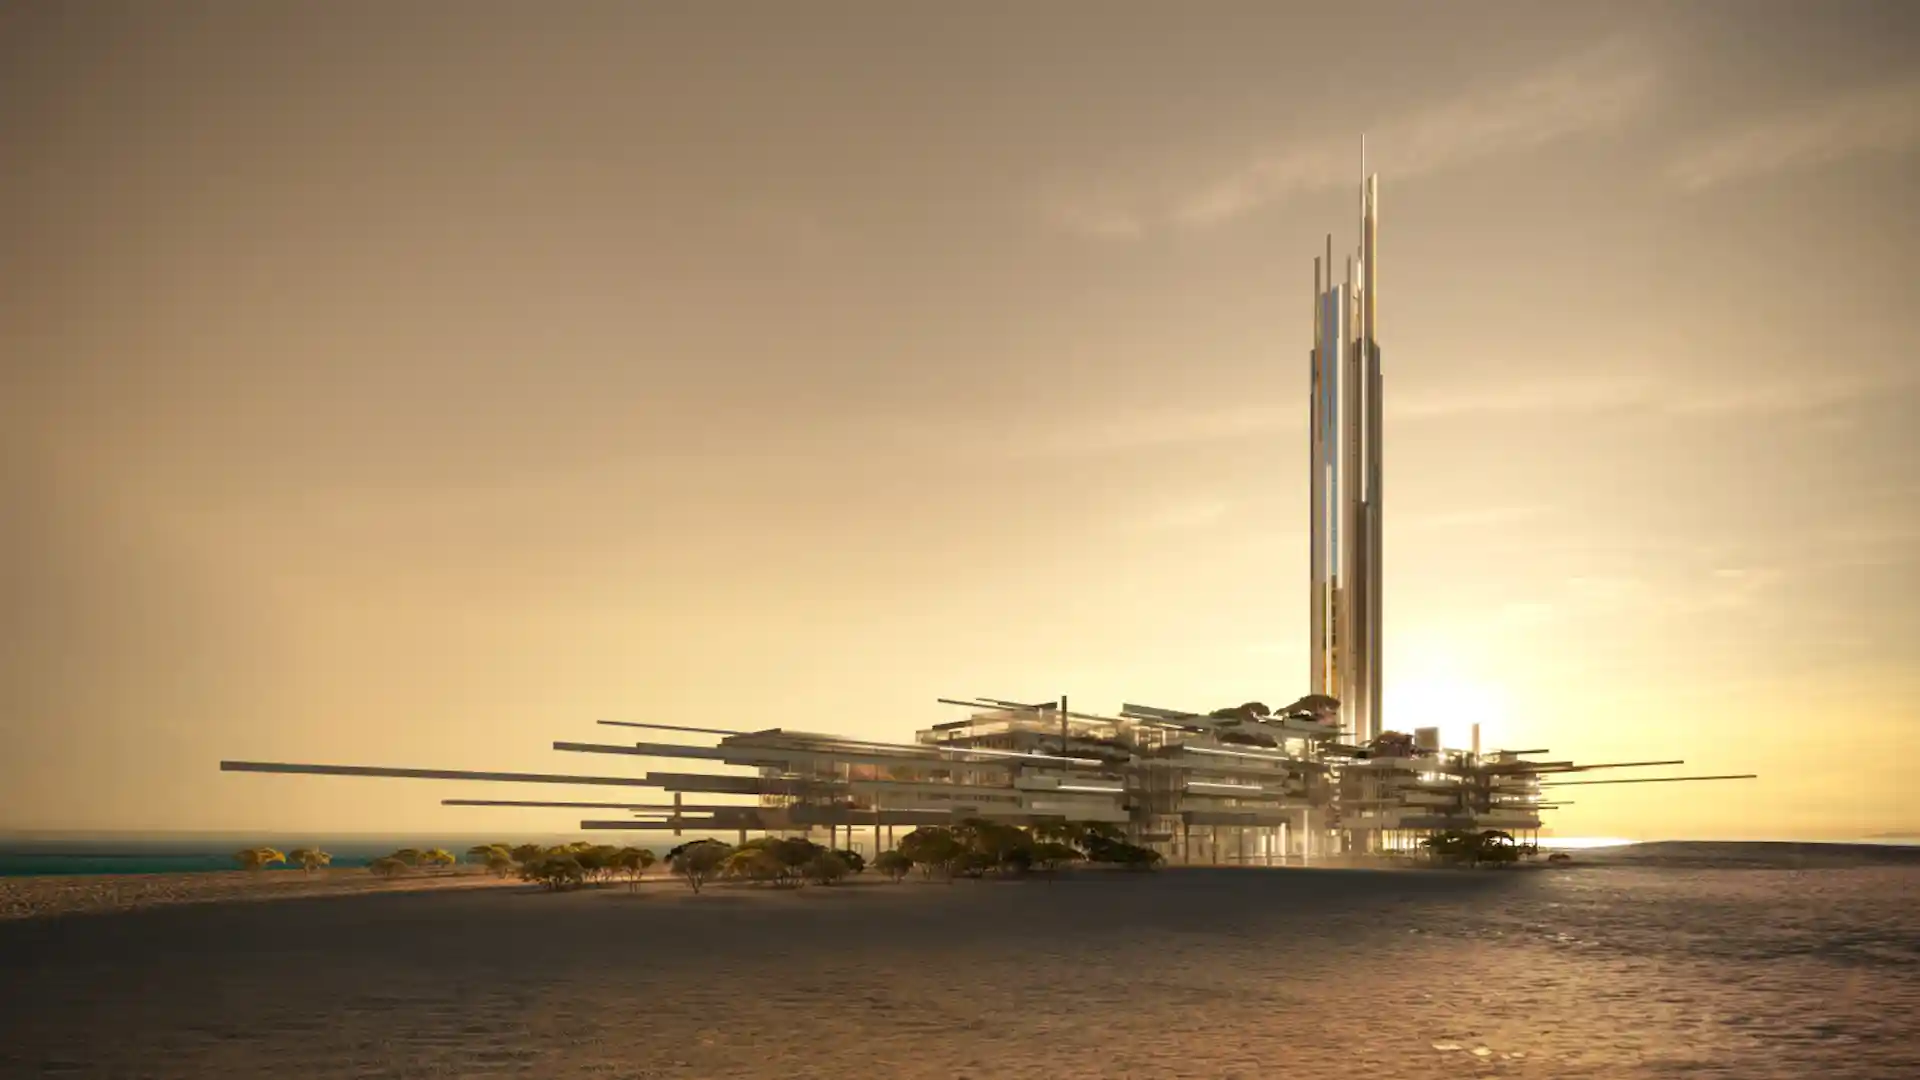 Los creadores de The Line lanzan Epicon: nuevos rascacielos y hoteles de lujo